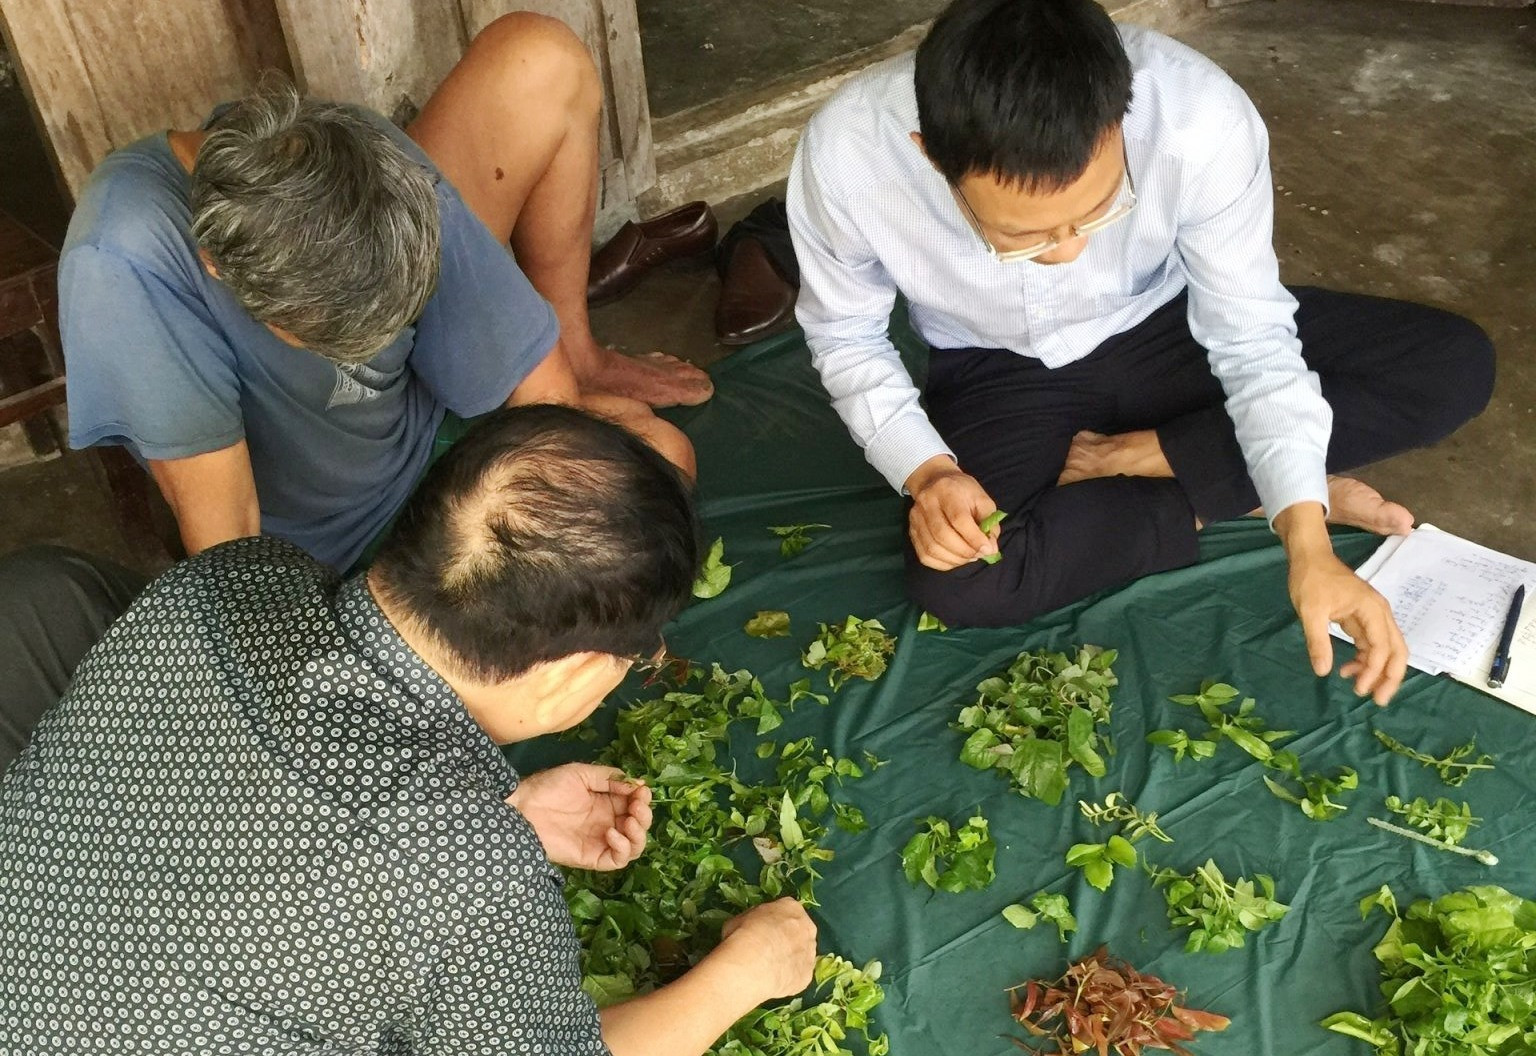 Các nhà khoa học nghiên cứu về các loại rau rừng Cù Lao Chàm. Ảnh: HOÀNG LIÊN